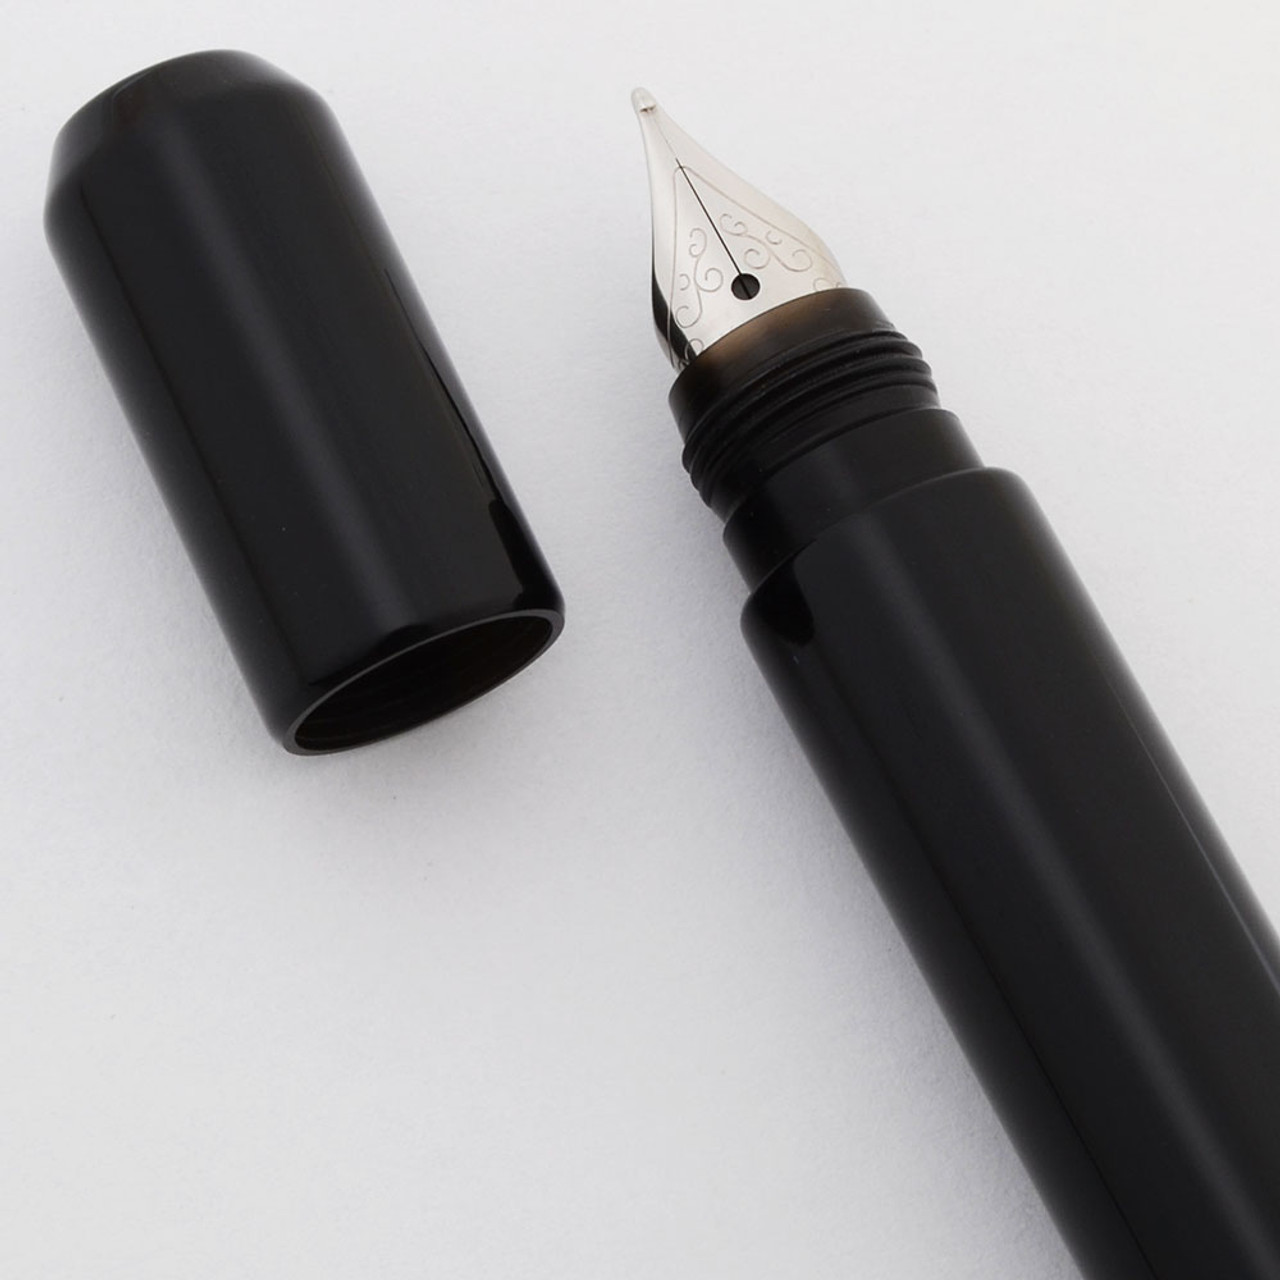 Franklin-Christoph Leather Pen Case - 3 Pens - Black